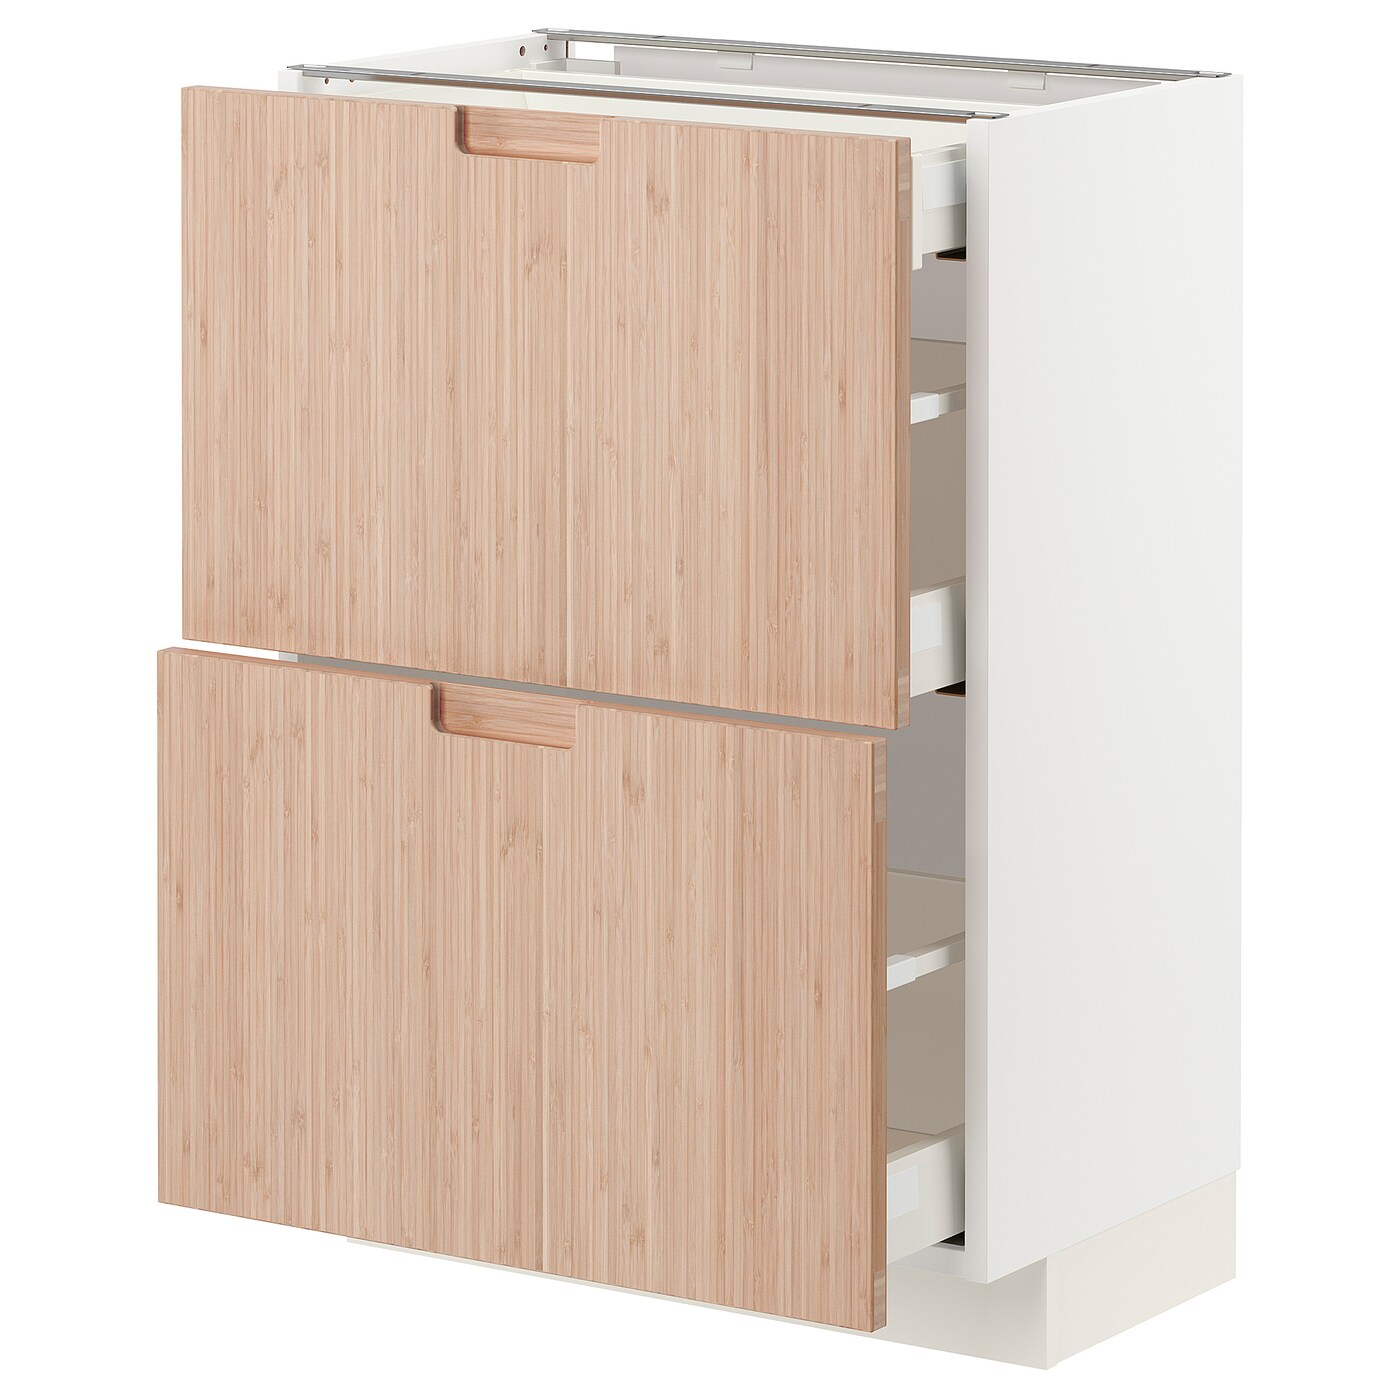 Напольный кухонный шкаф  - IKEA METOD MAXIMERA, 88x39x60см, белый/светлый бамбук, МЕТОД МАКСИМЕРА ИКЕА